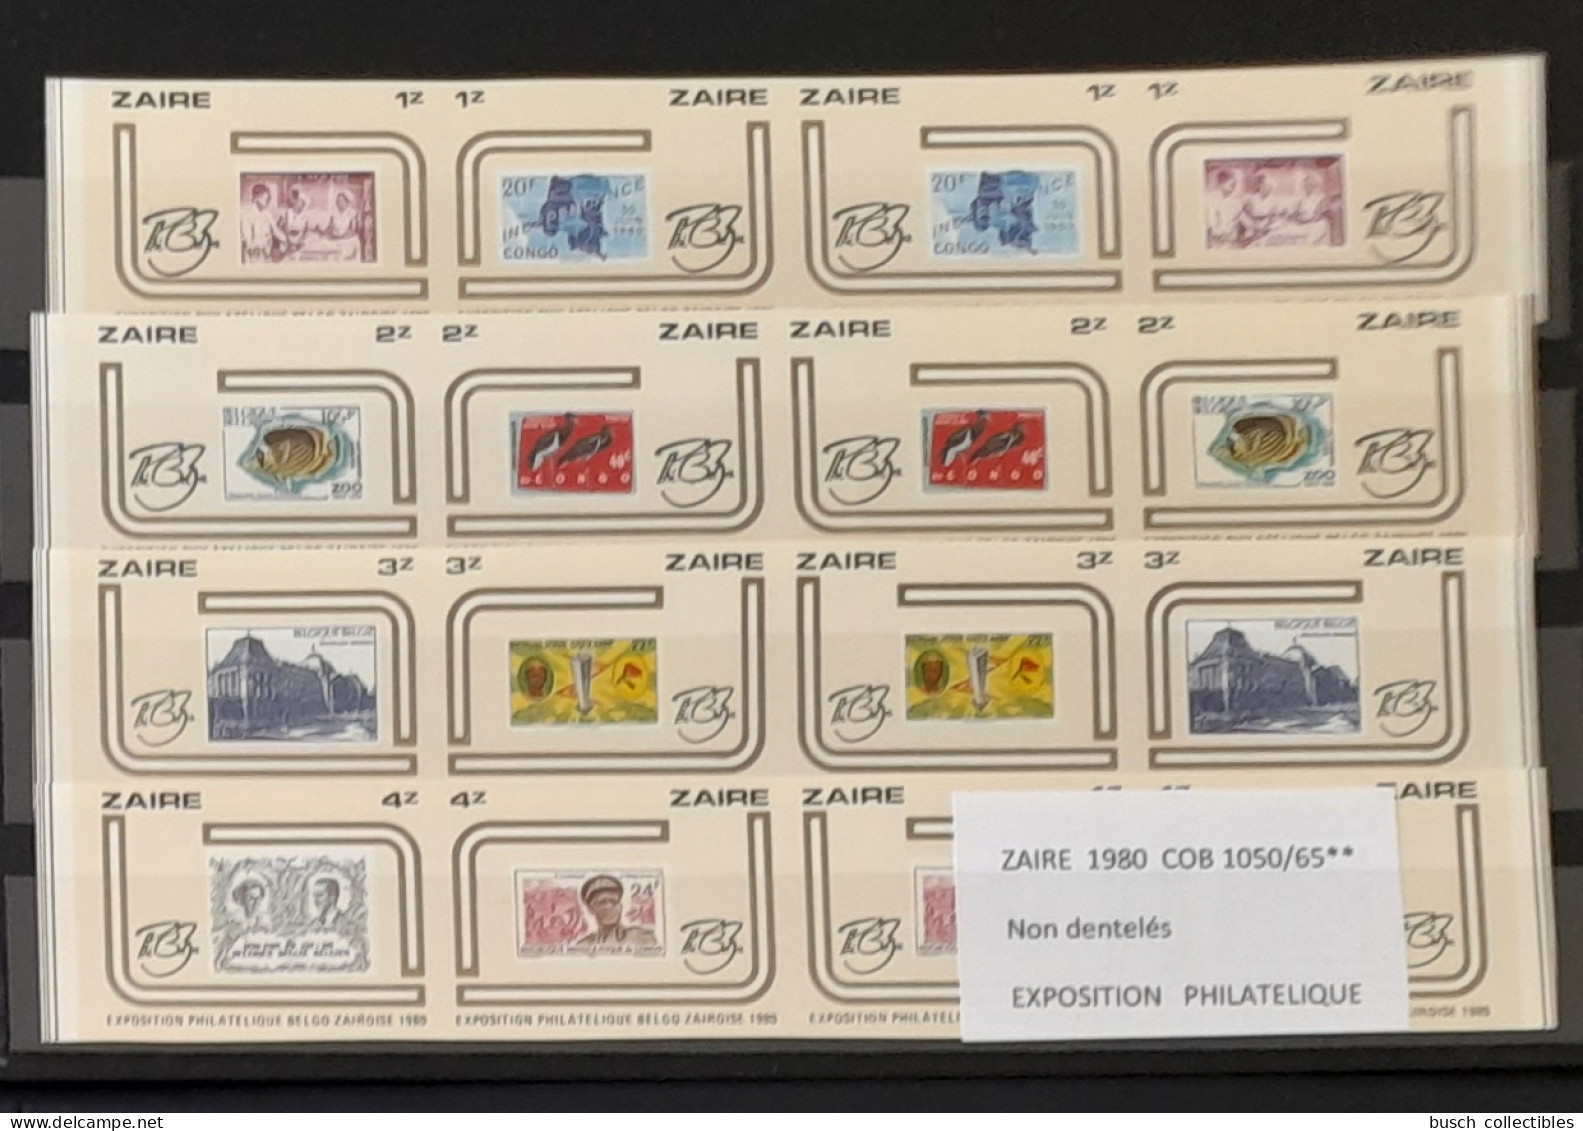 Congo Zaire 1980 COB 1050 - 1065 IMPERF Non Dentelé Exposition Philatélique Zairoise Stamp Exhibition Timbres Sur Stamps - Unused Stamps